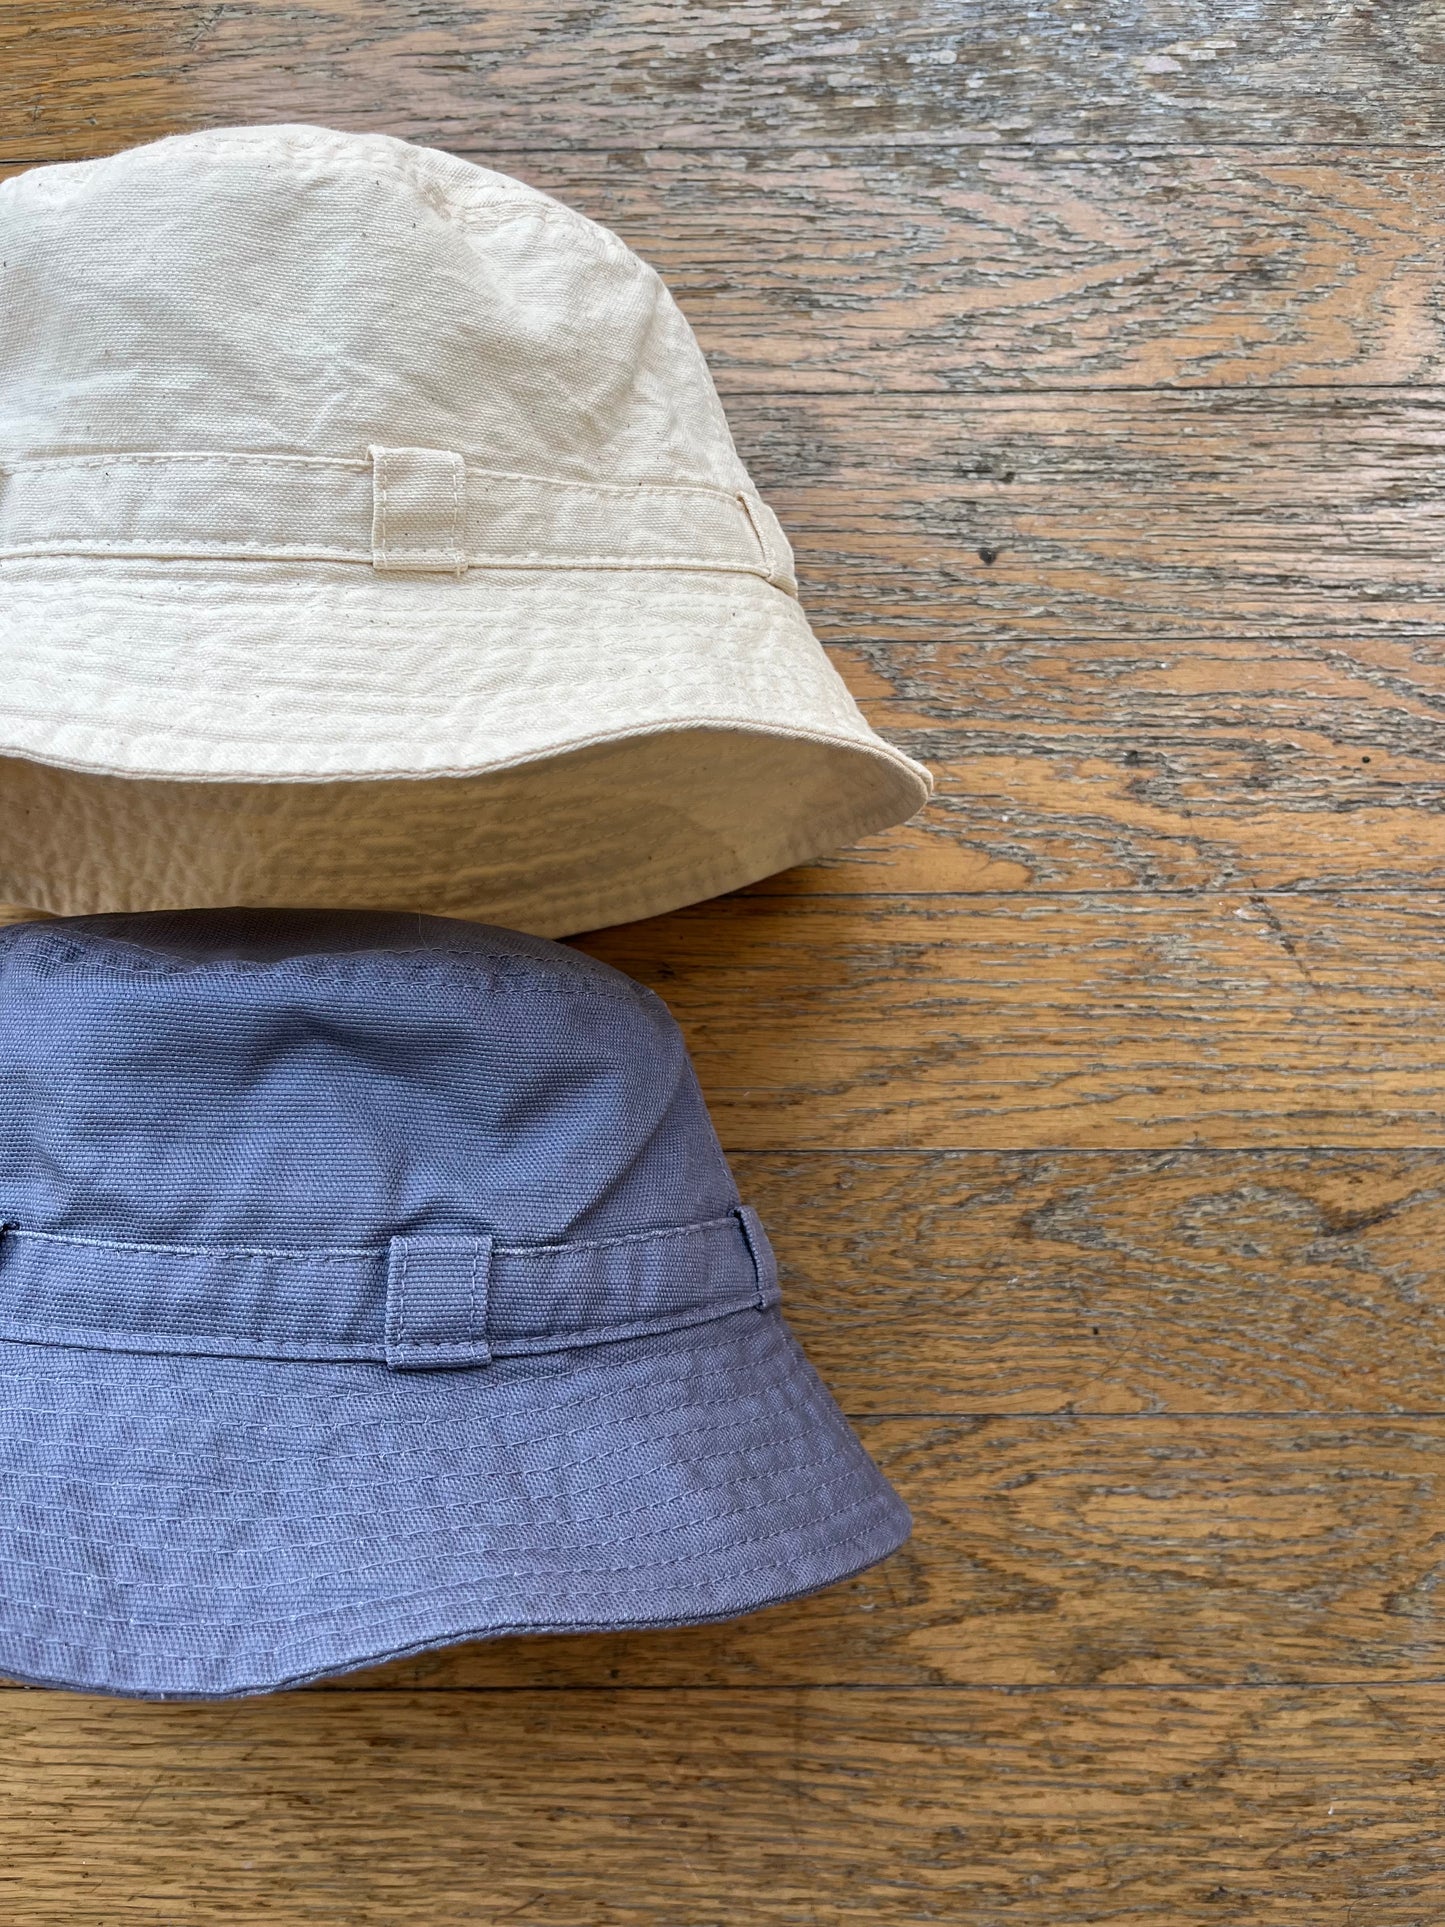 [ BLINK ] Cotton Canvas Boonie Hat – In part